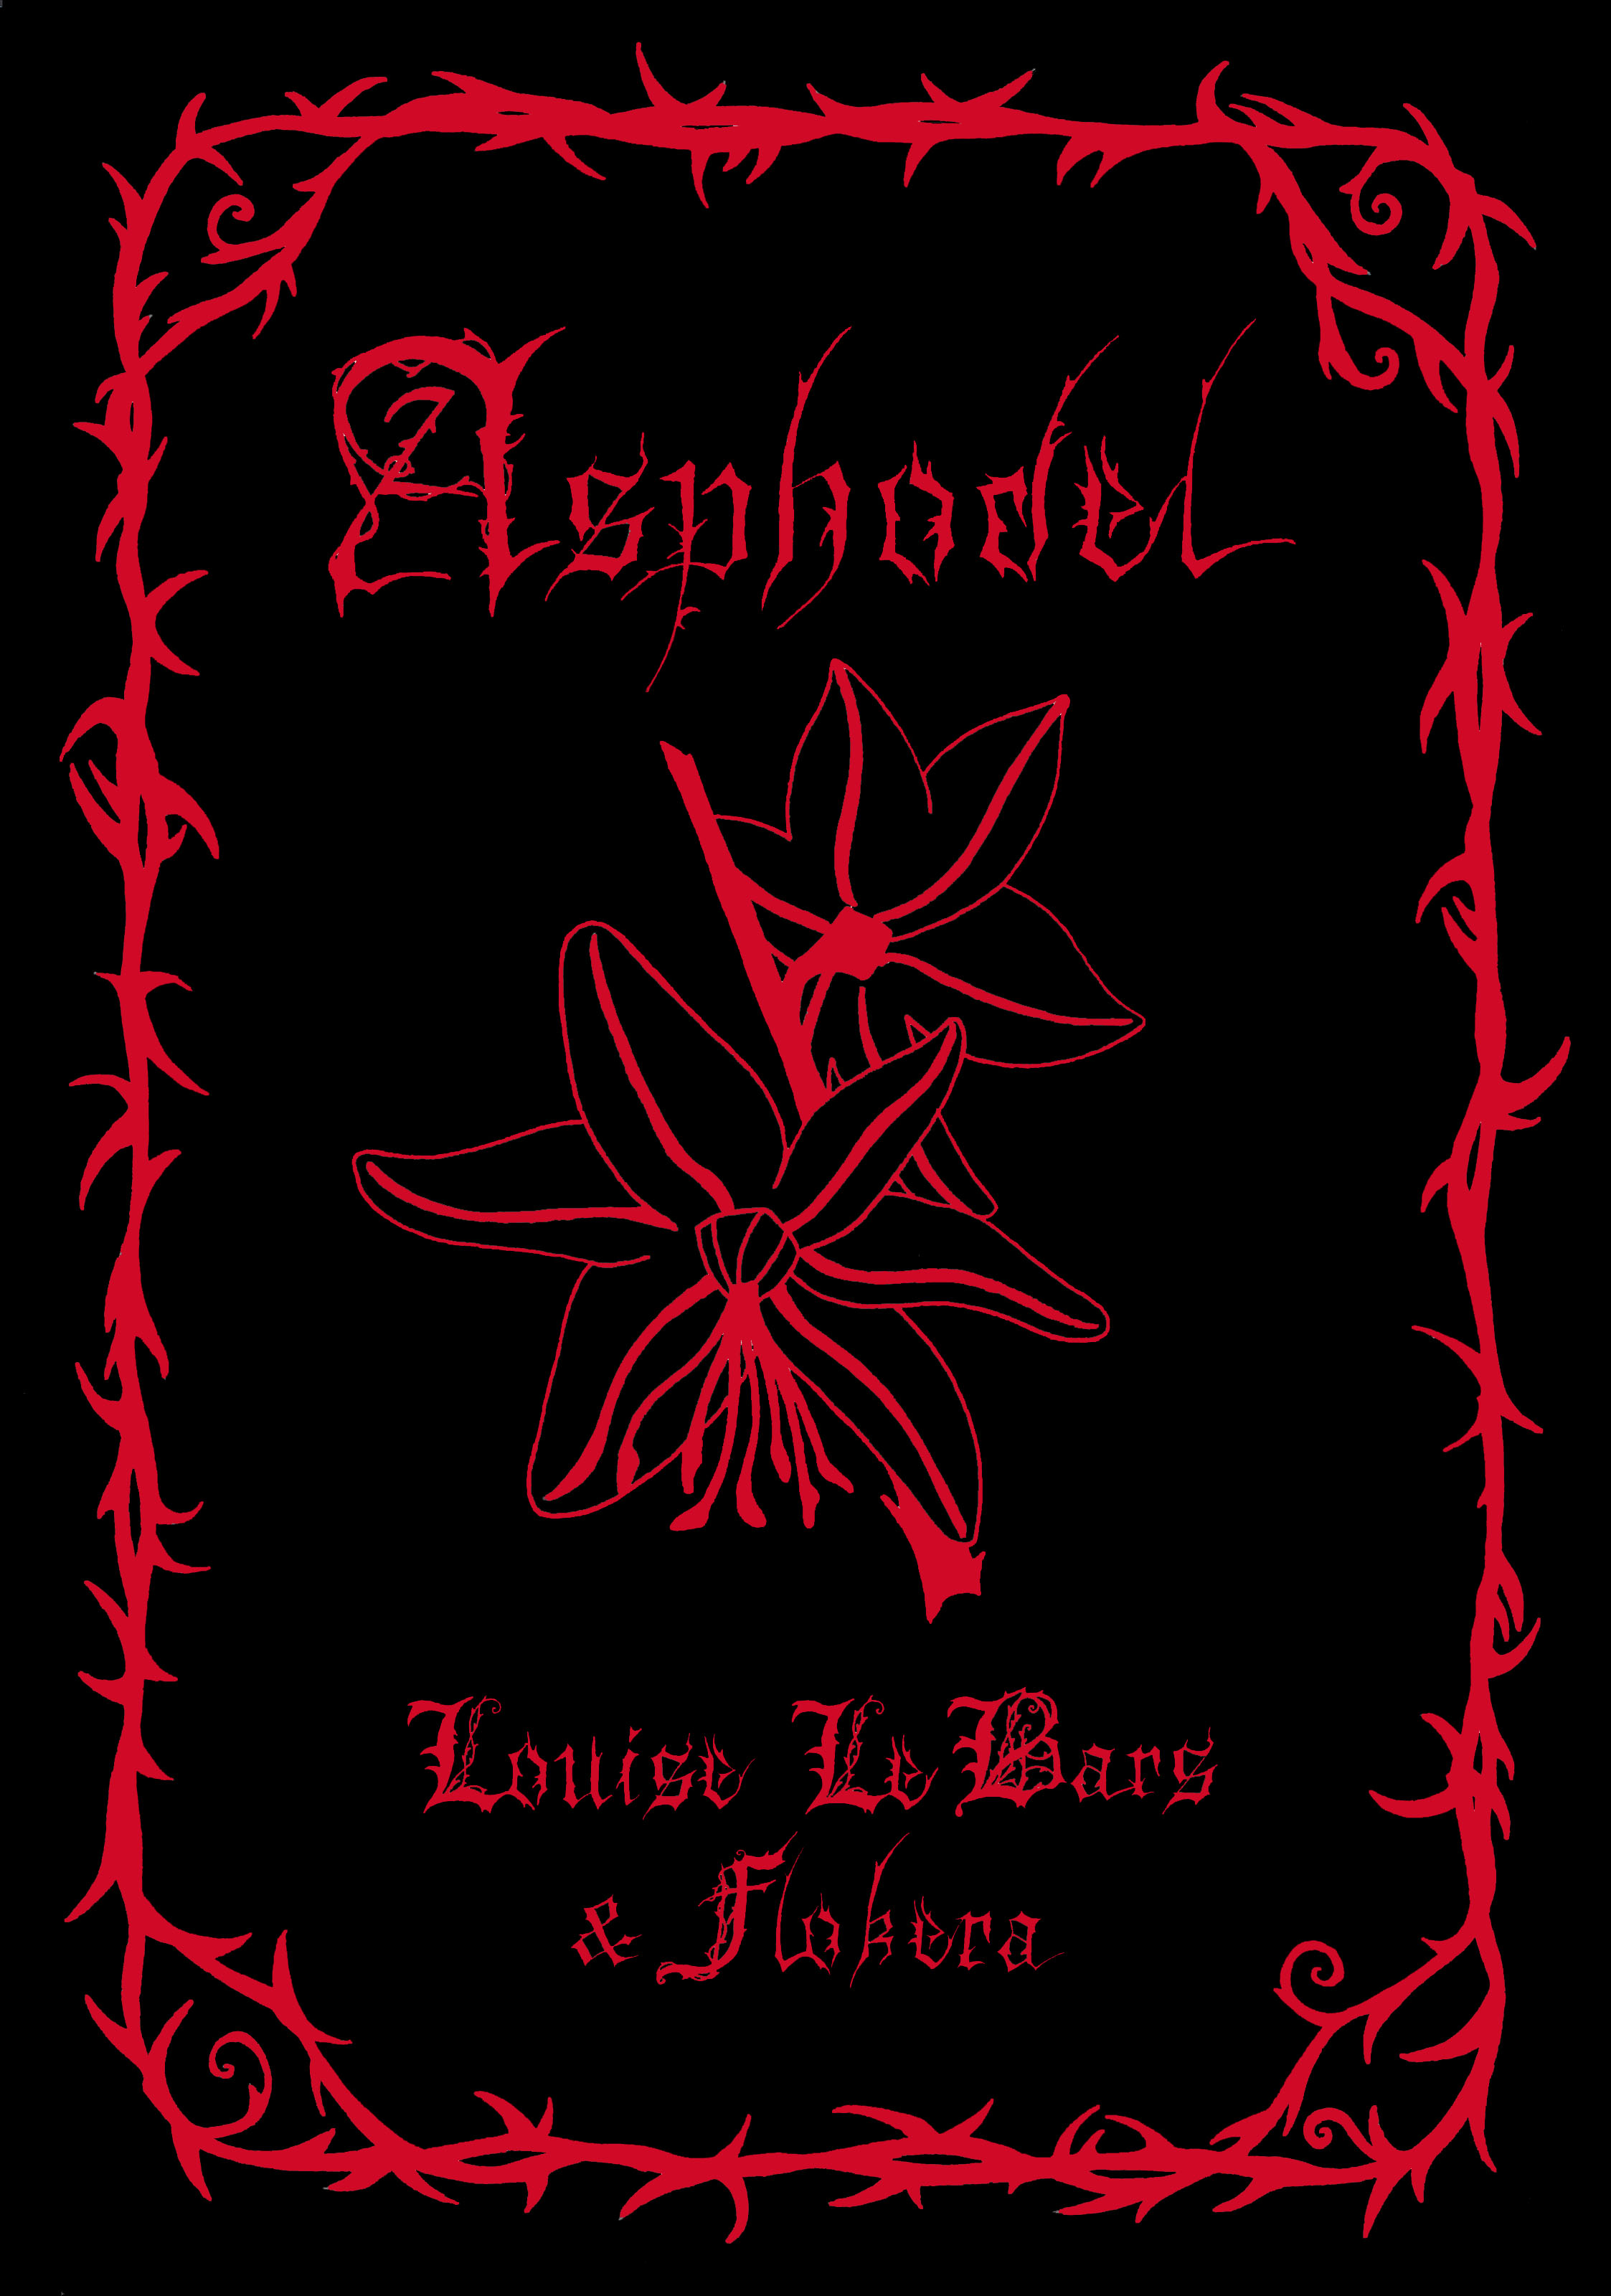 Asphodel, de Louise Le Bars et Flokera, aux éditions Noir d'Absinthe